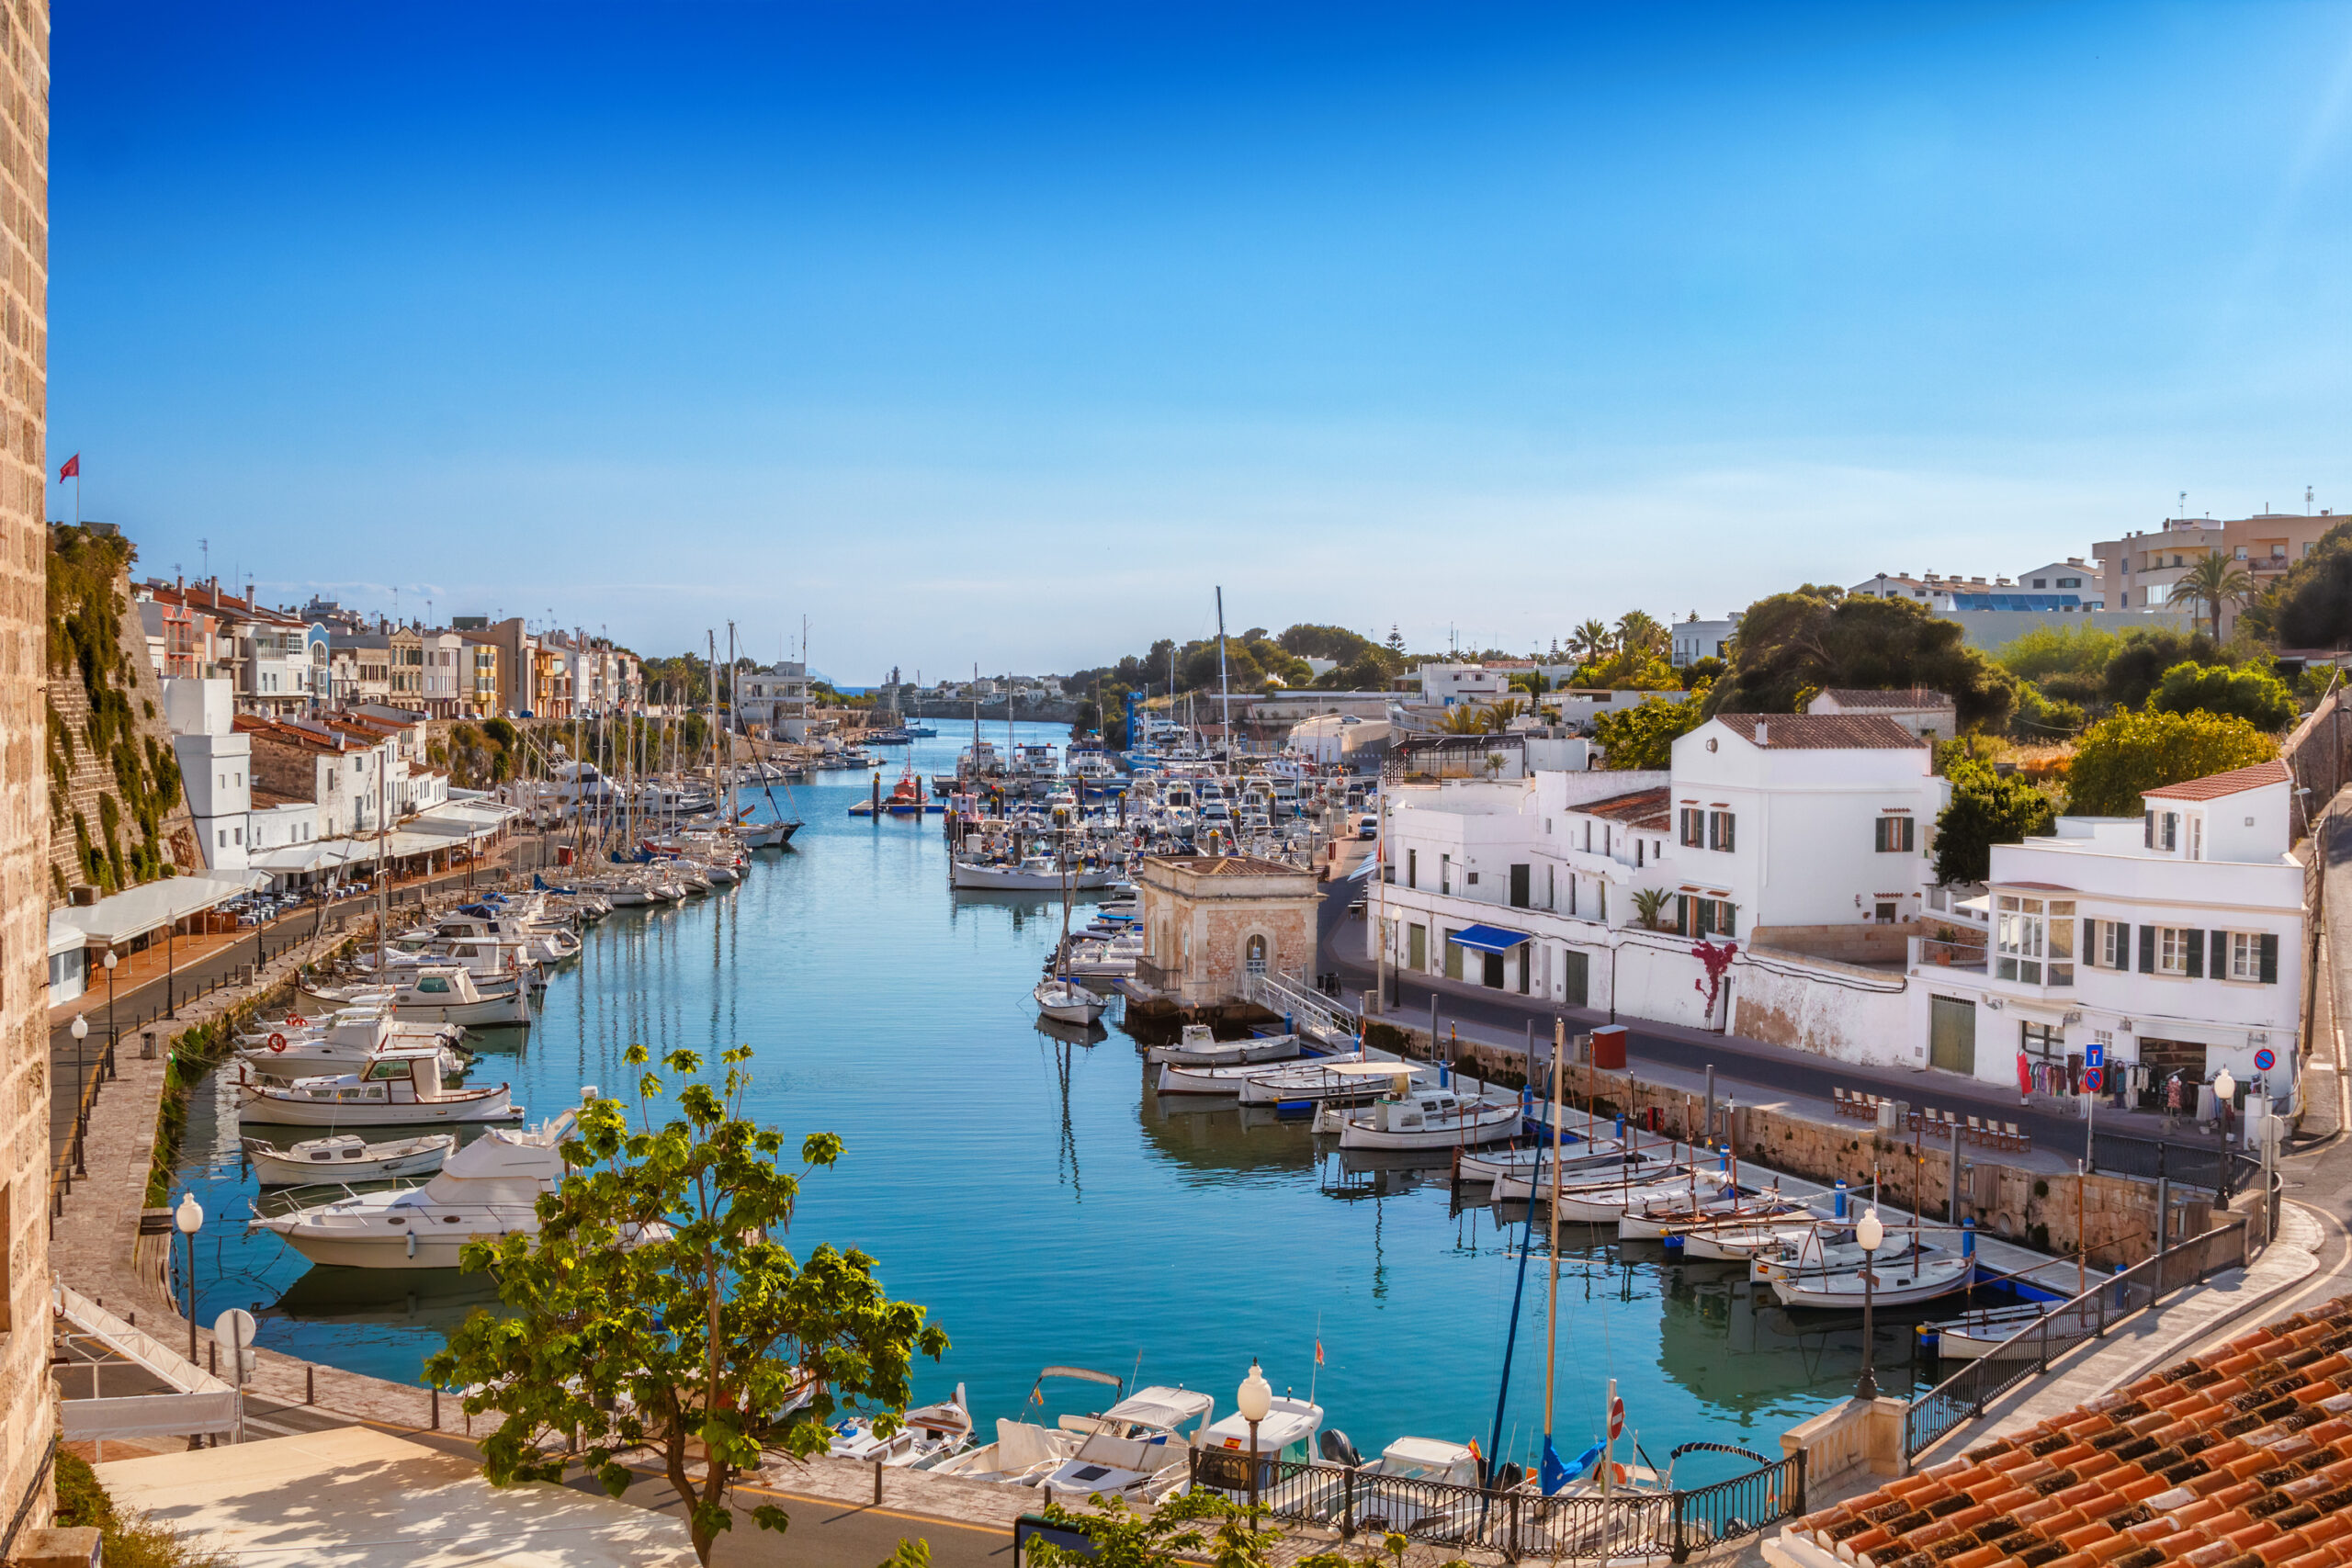 Ungefähr 50 Ballen Haschisch tauchen in der Nähe des Hafens von Ciutadella auf Menorca auf